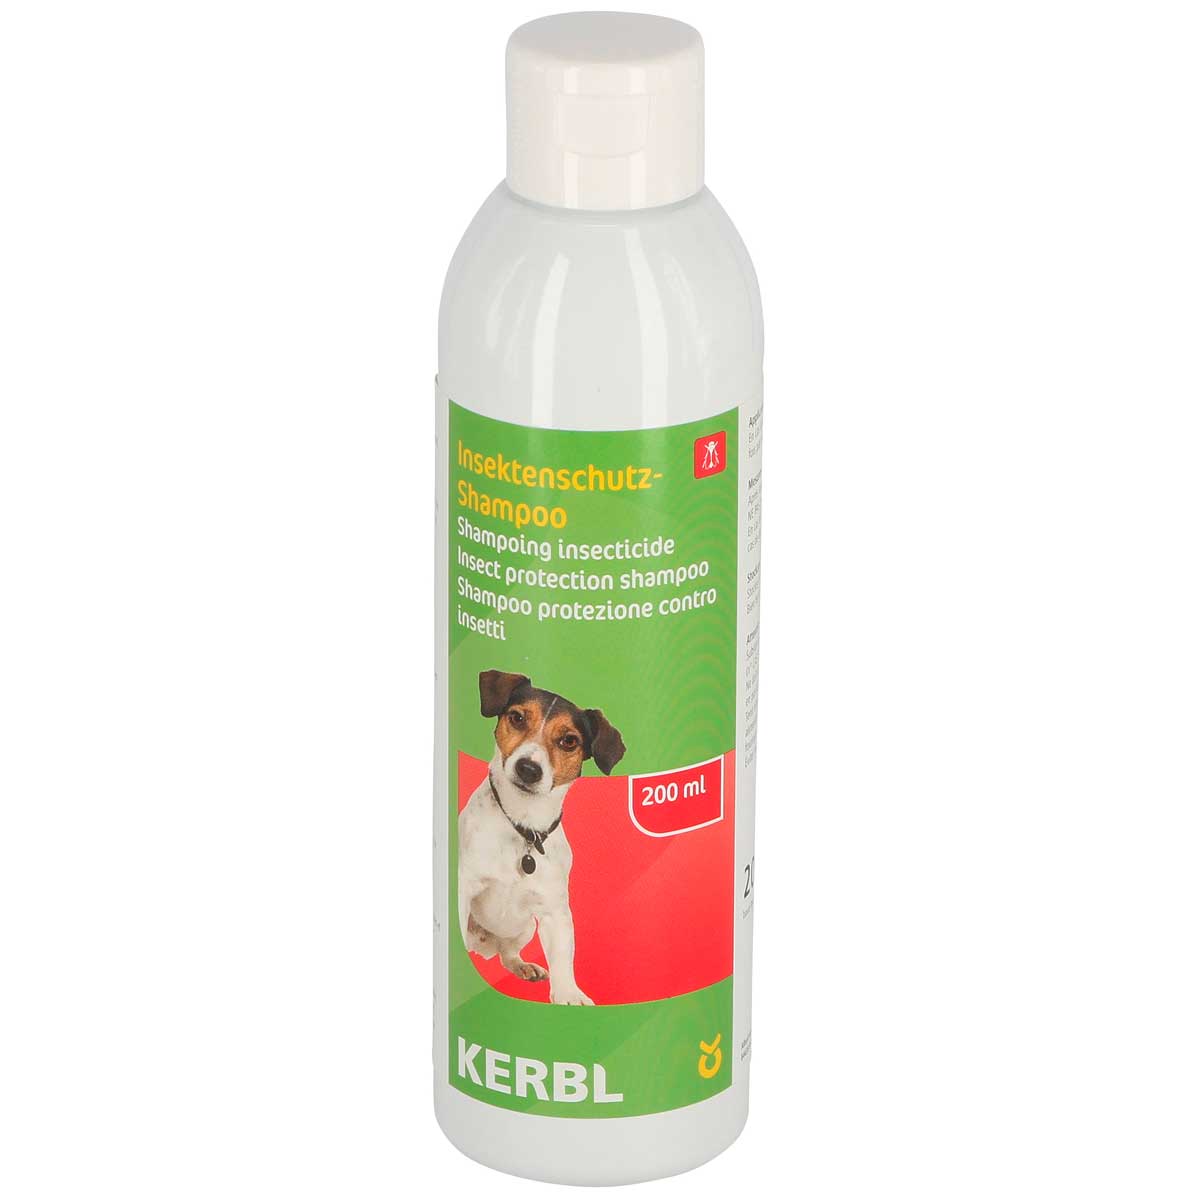 Kerbl Shampoo repellente per insetti 200 ml